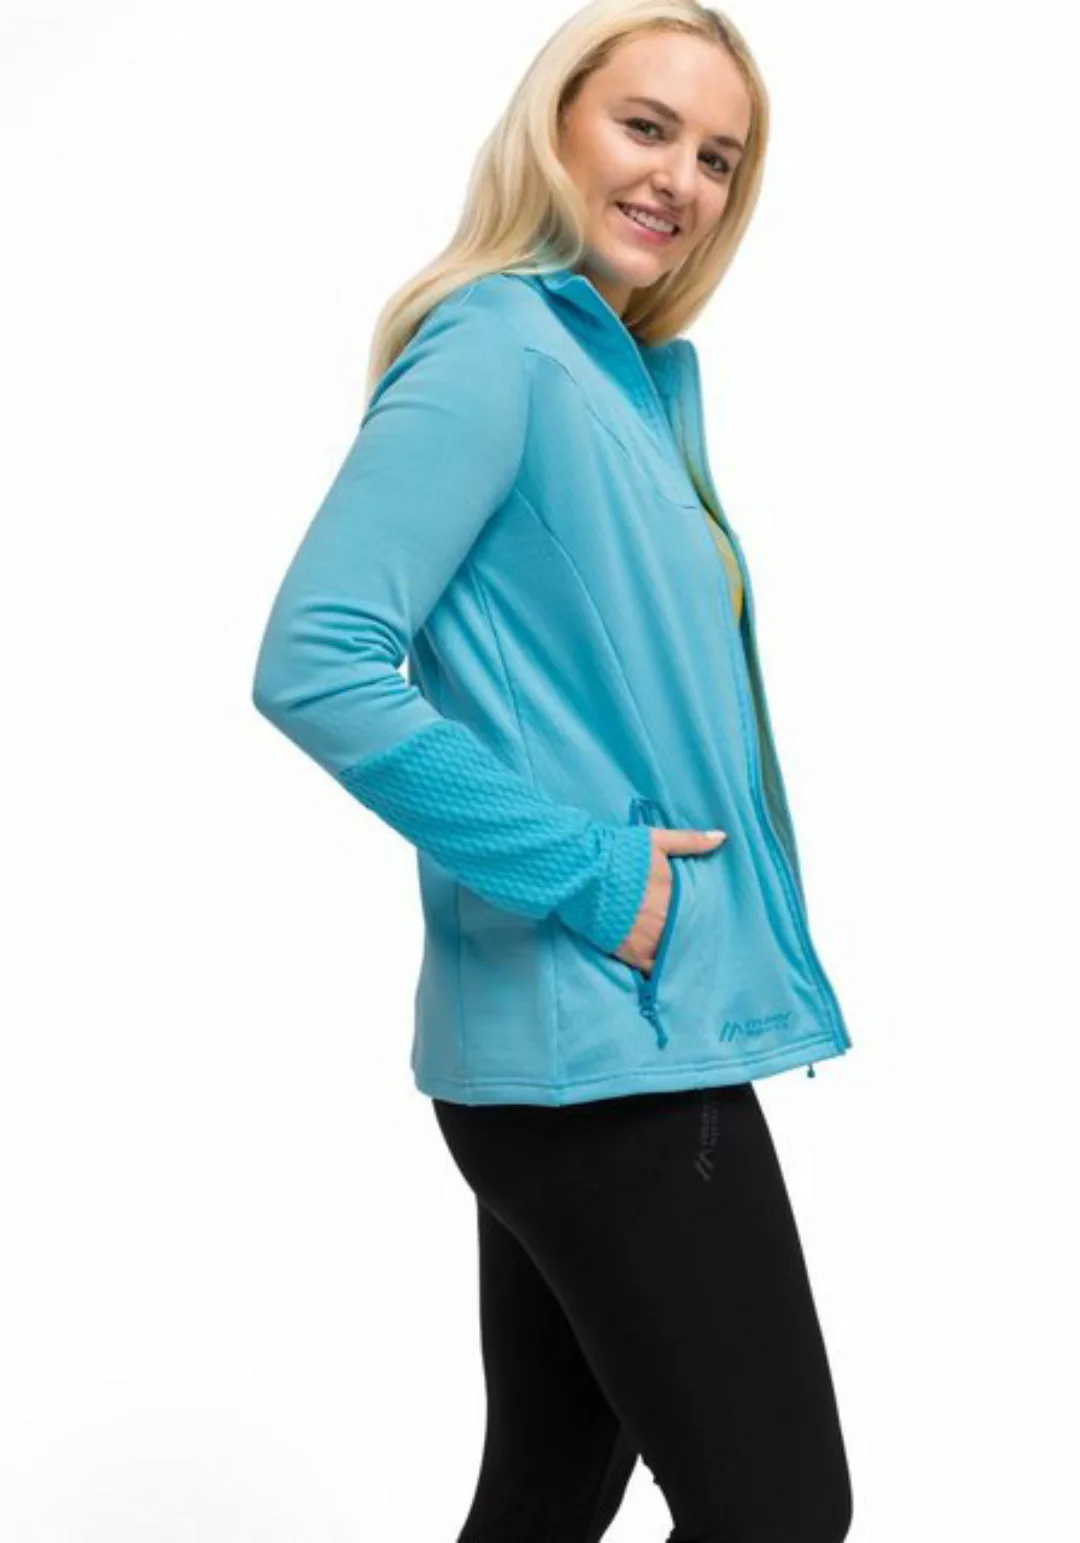 Maier Sports Funktionsjacke "Faxi Jacket W", Elastische Outdoorjacke mit an günstig online kaufen